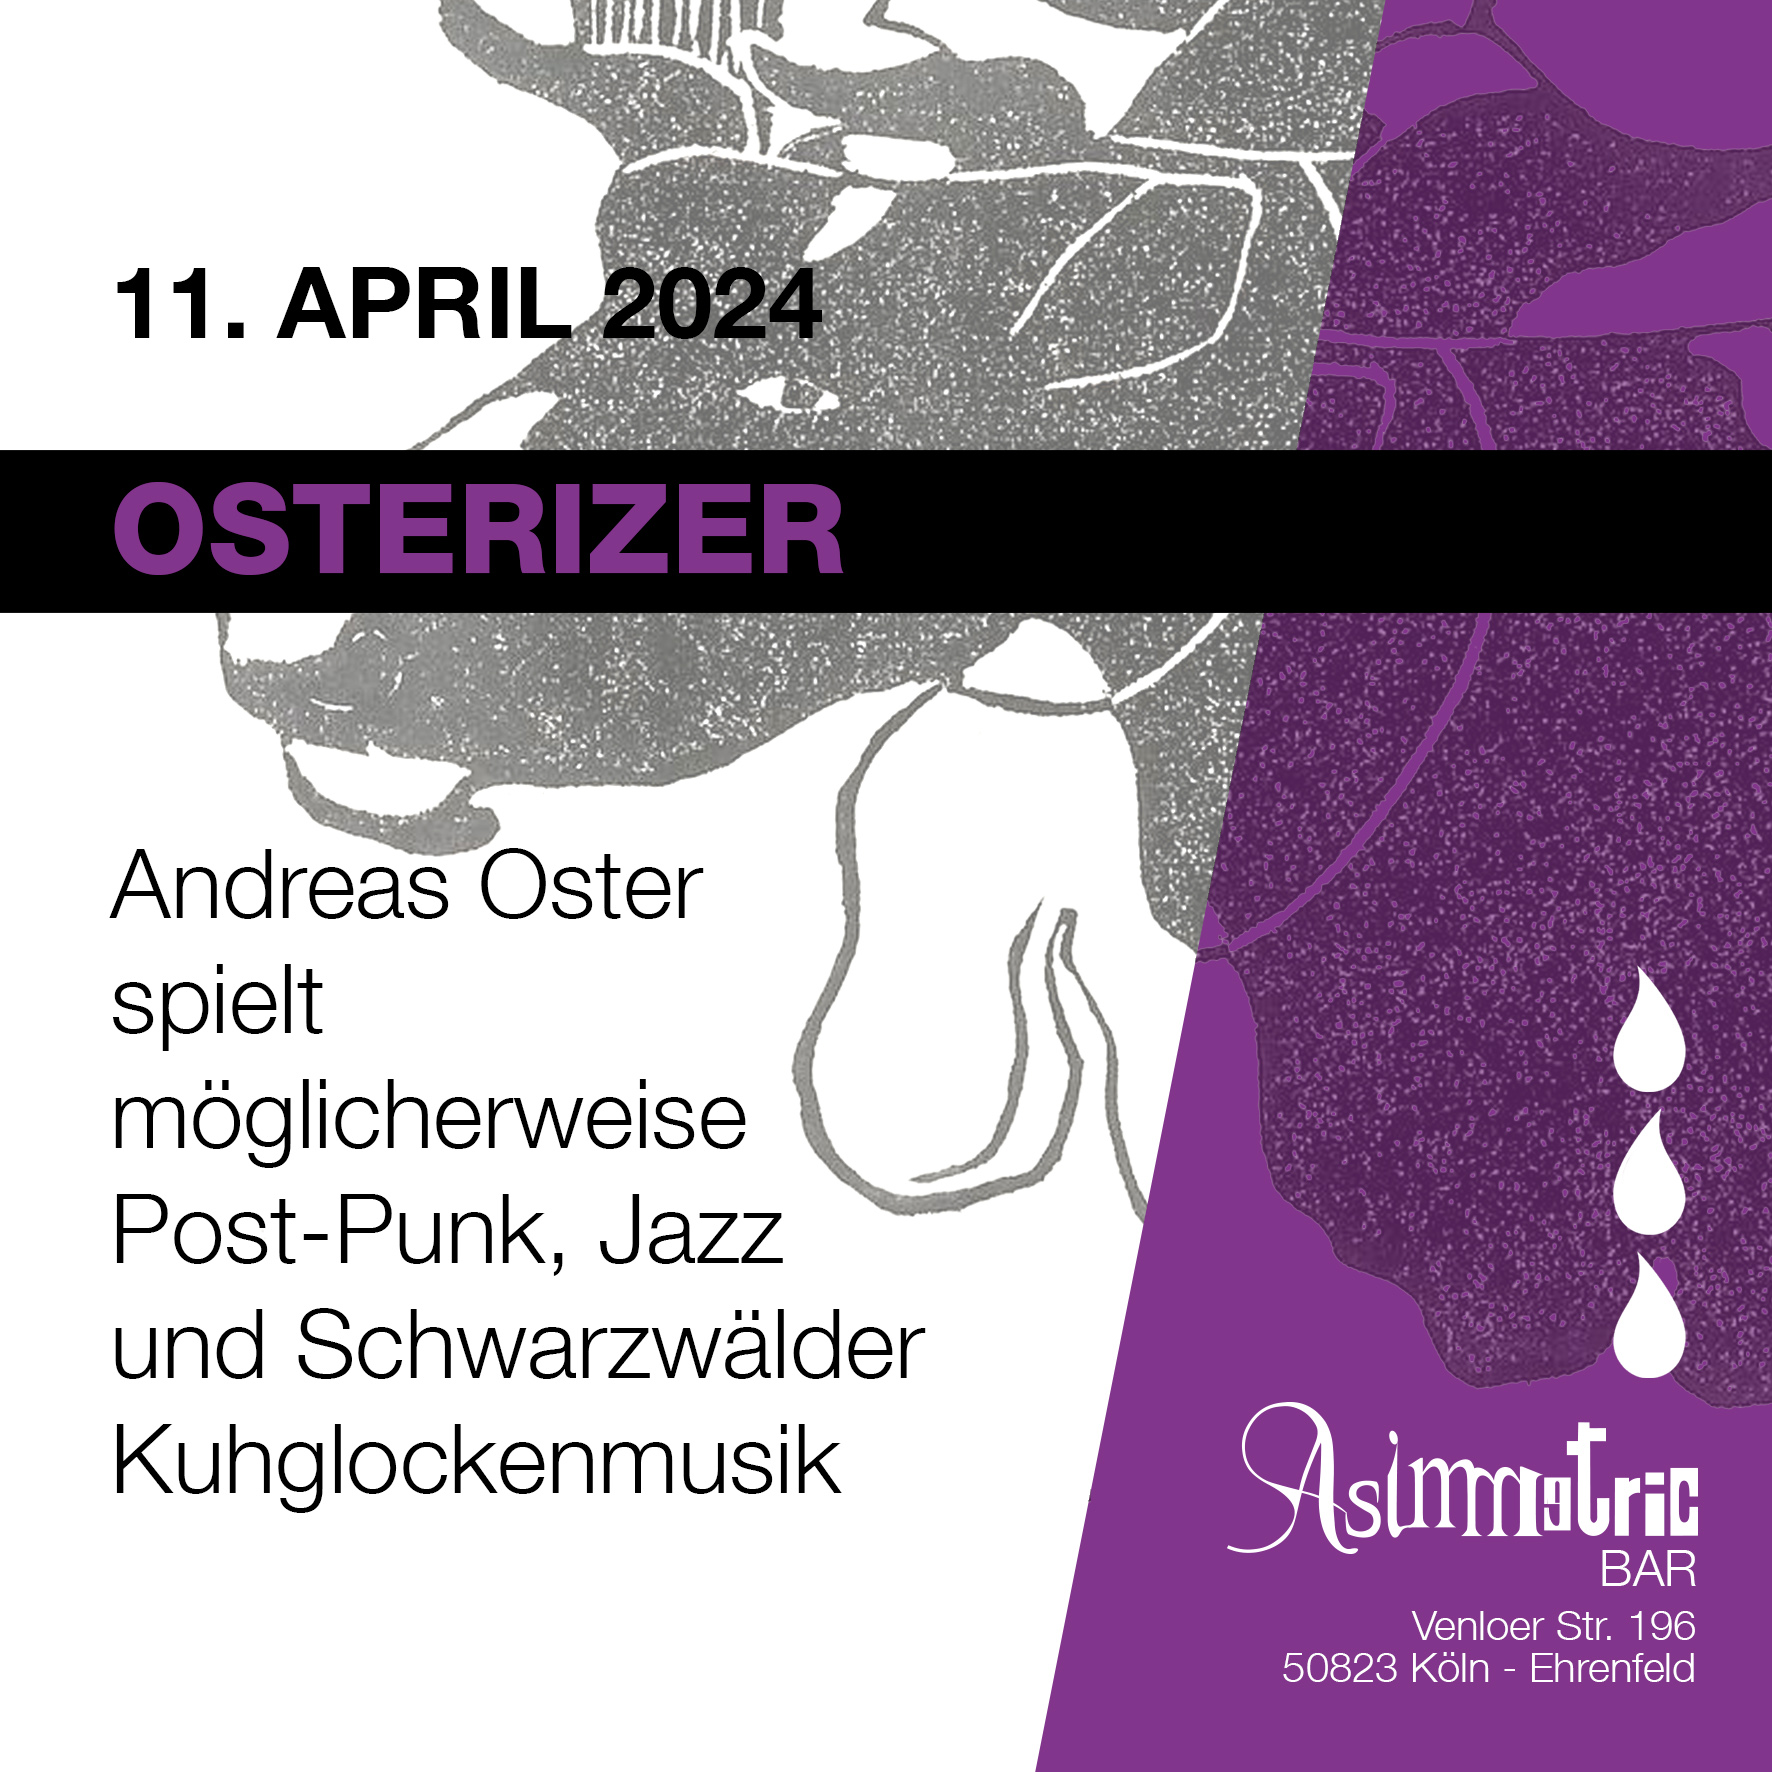 Osterizer - Asimmetric Bar - 11.4.2024